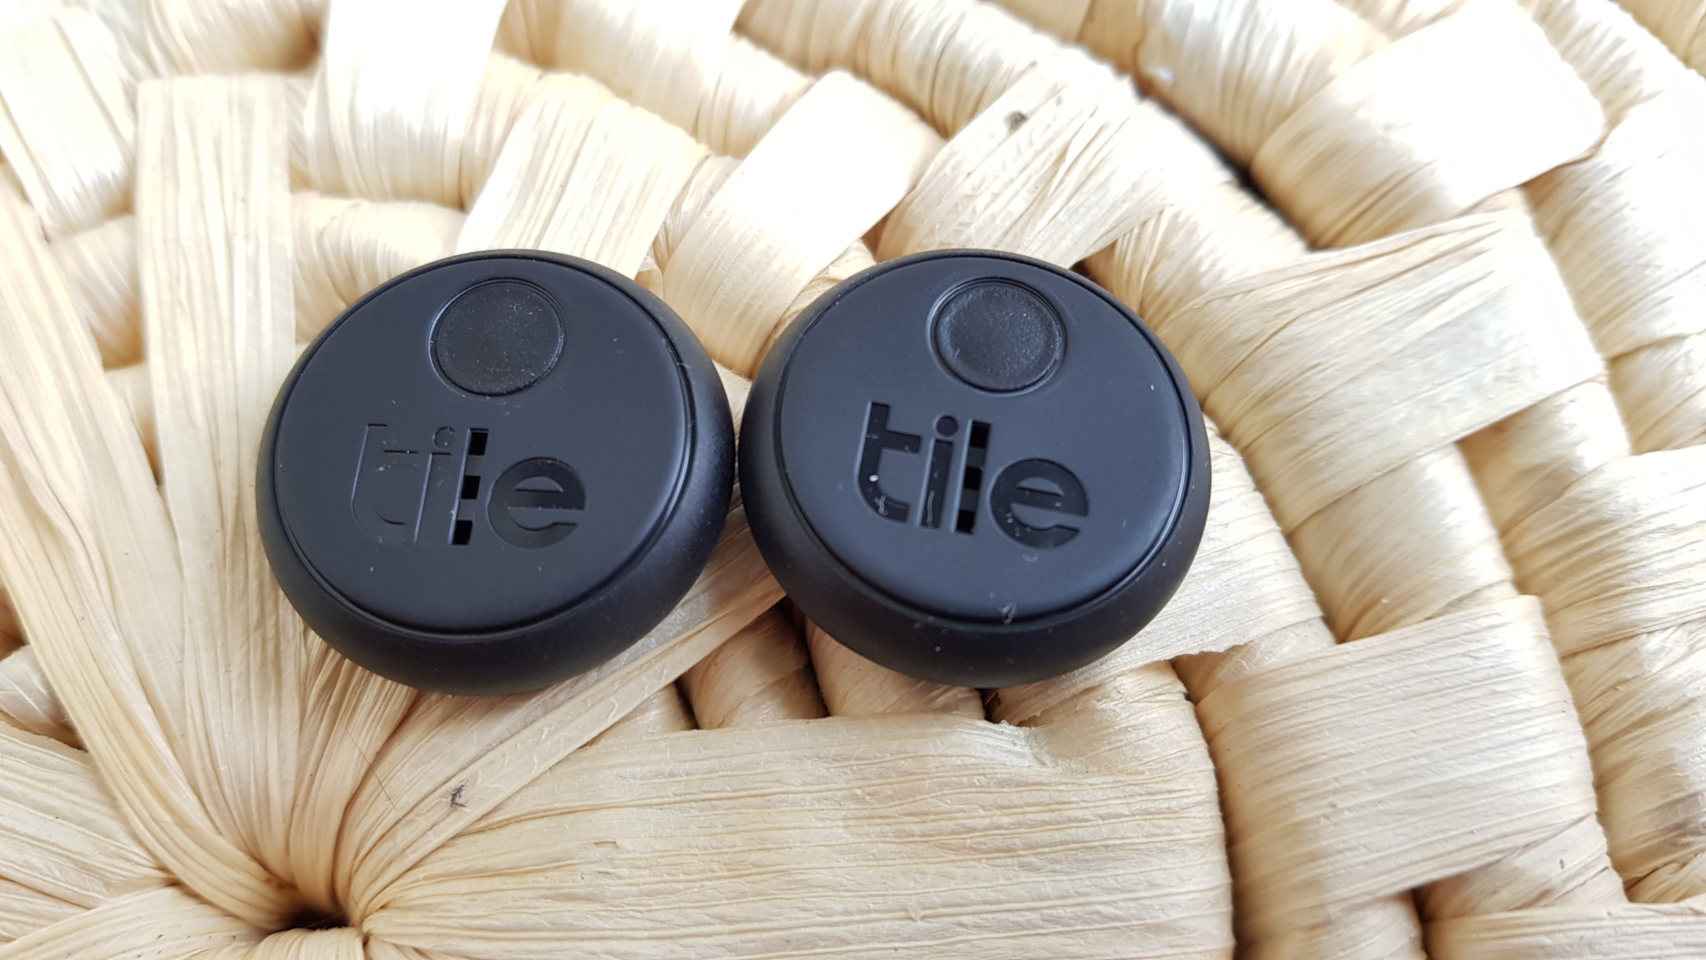 Tile es más famosa por localizadores Bluetooth como los Tile Stickers